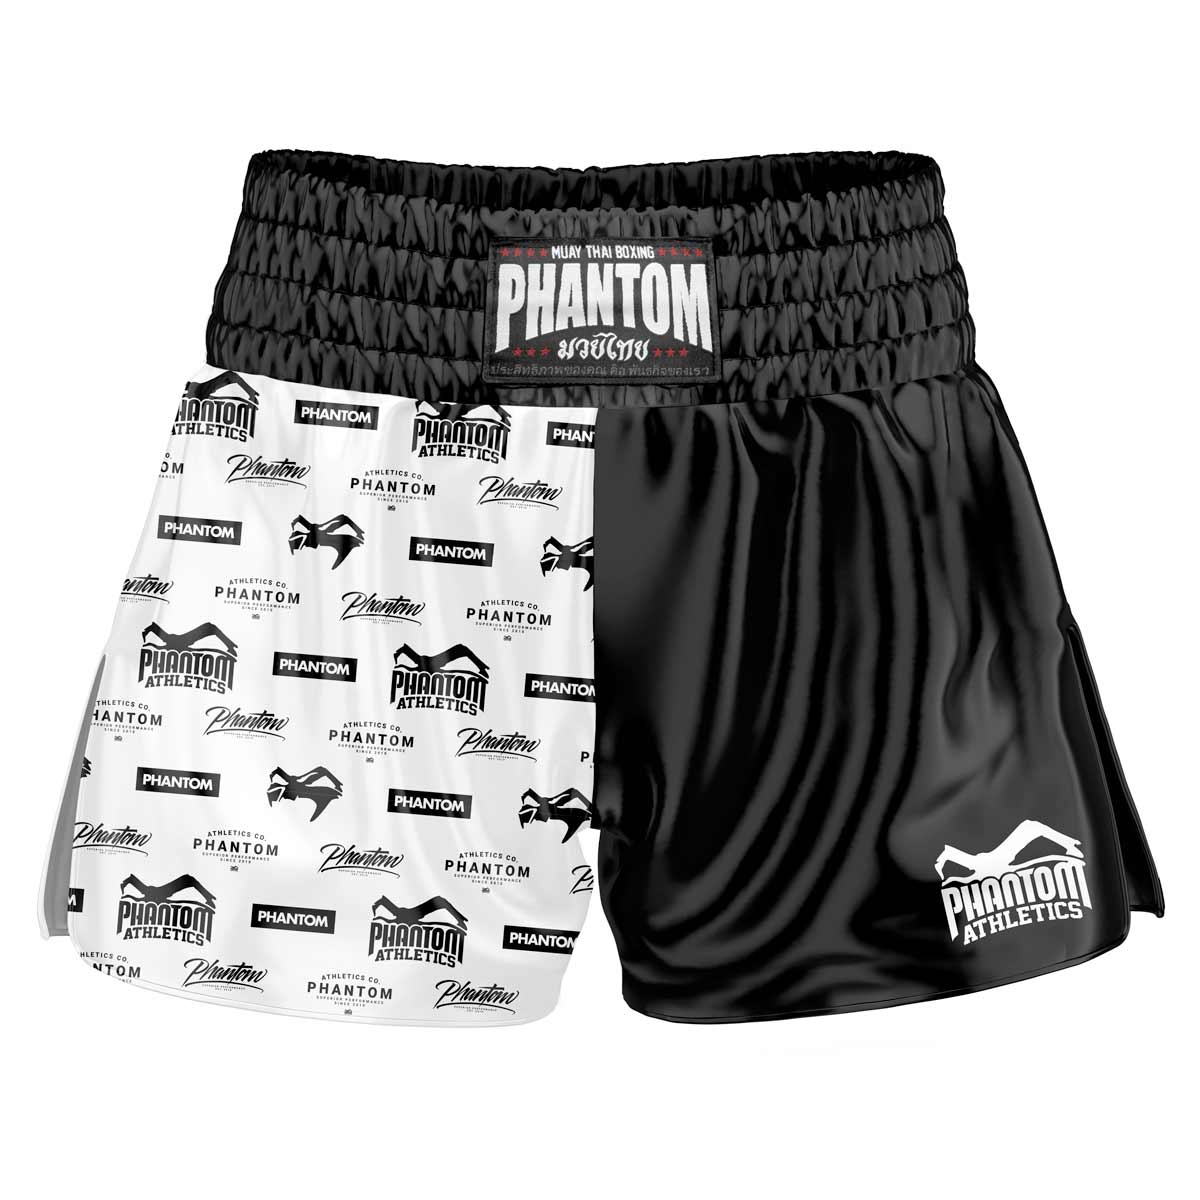 Phantom Muay Thai lühikesed püksid LEGEND. Vana kooli satiinkangas annab originaalse Tai tunde. Tavapärases Phantom Athletics kvaliteedis. Ideaalne teie Tai poksi treeninguteks ja võistlusteks.